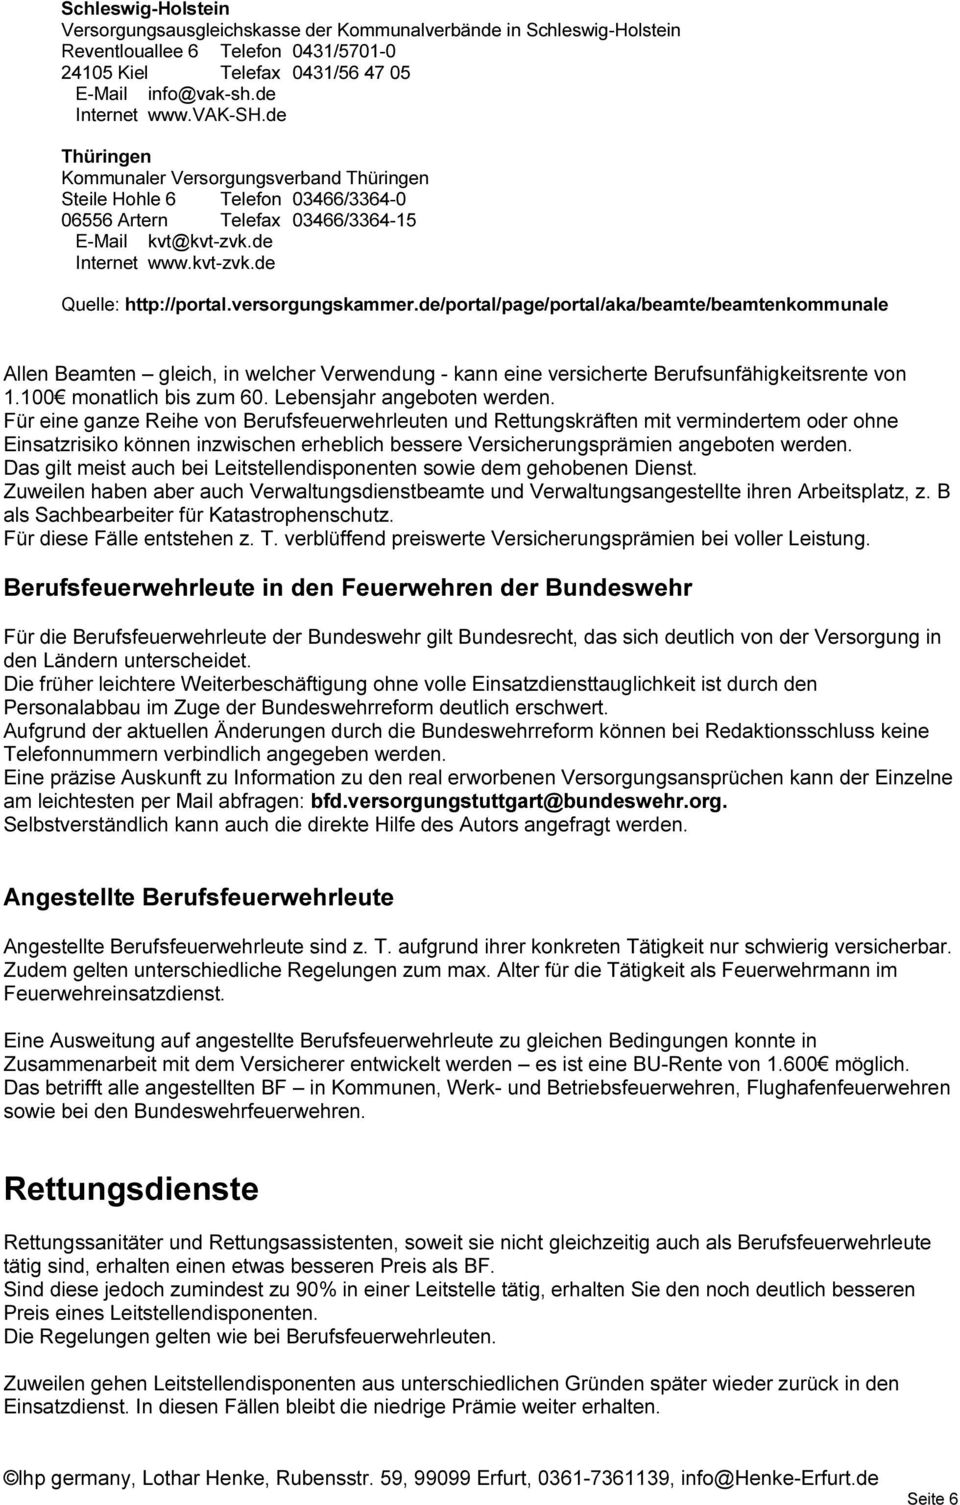 versorgungskammer.de/portal/page/portal/aka/beamte/beamtenkommunale Allen Beamten gleich, in welcher Verwendung - kann eine versicherte Berufsunfähigkeitsrente von 1.100 monatlich bis zum 60.